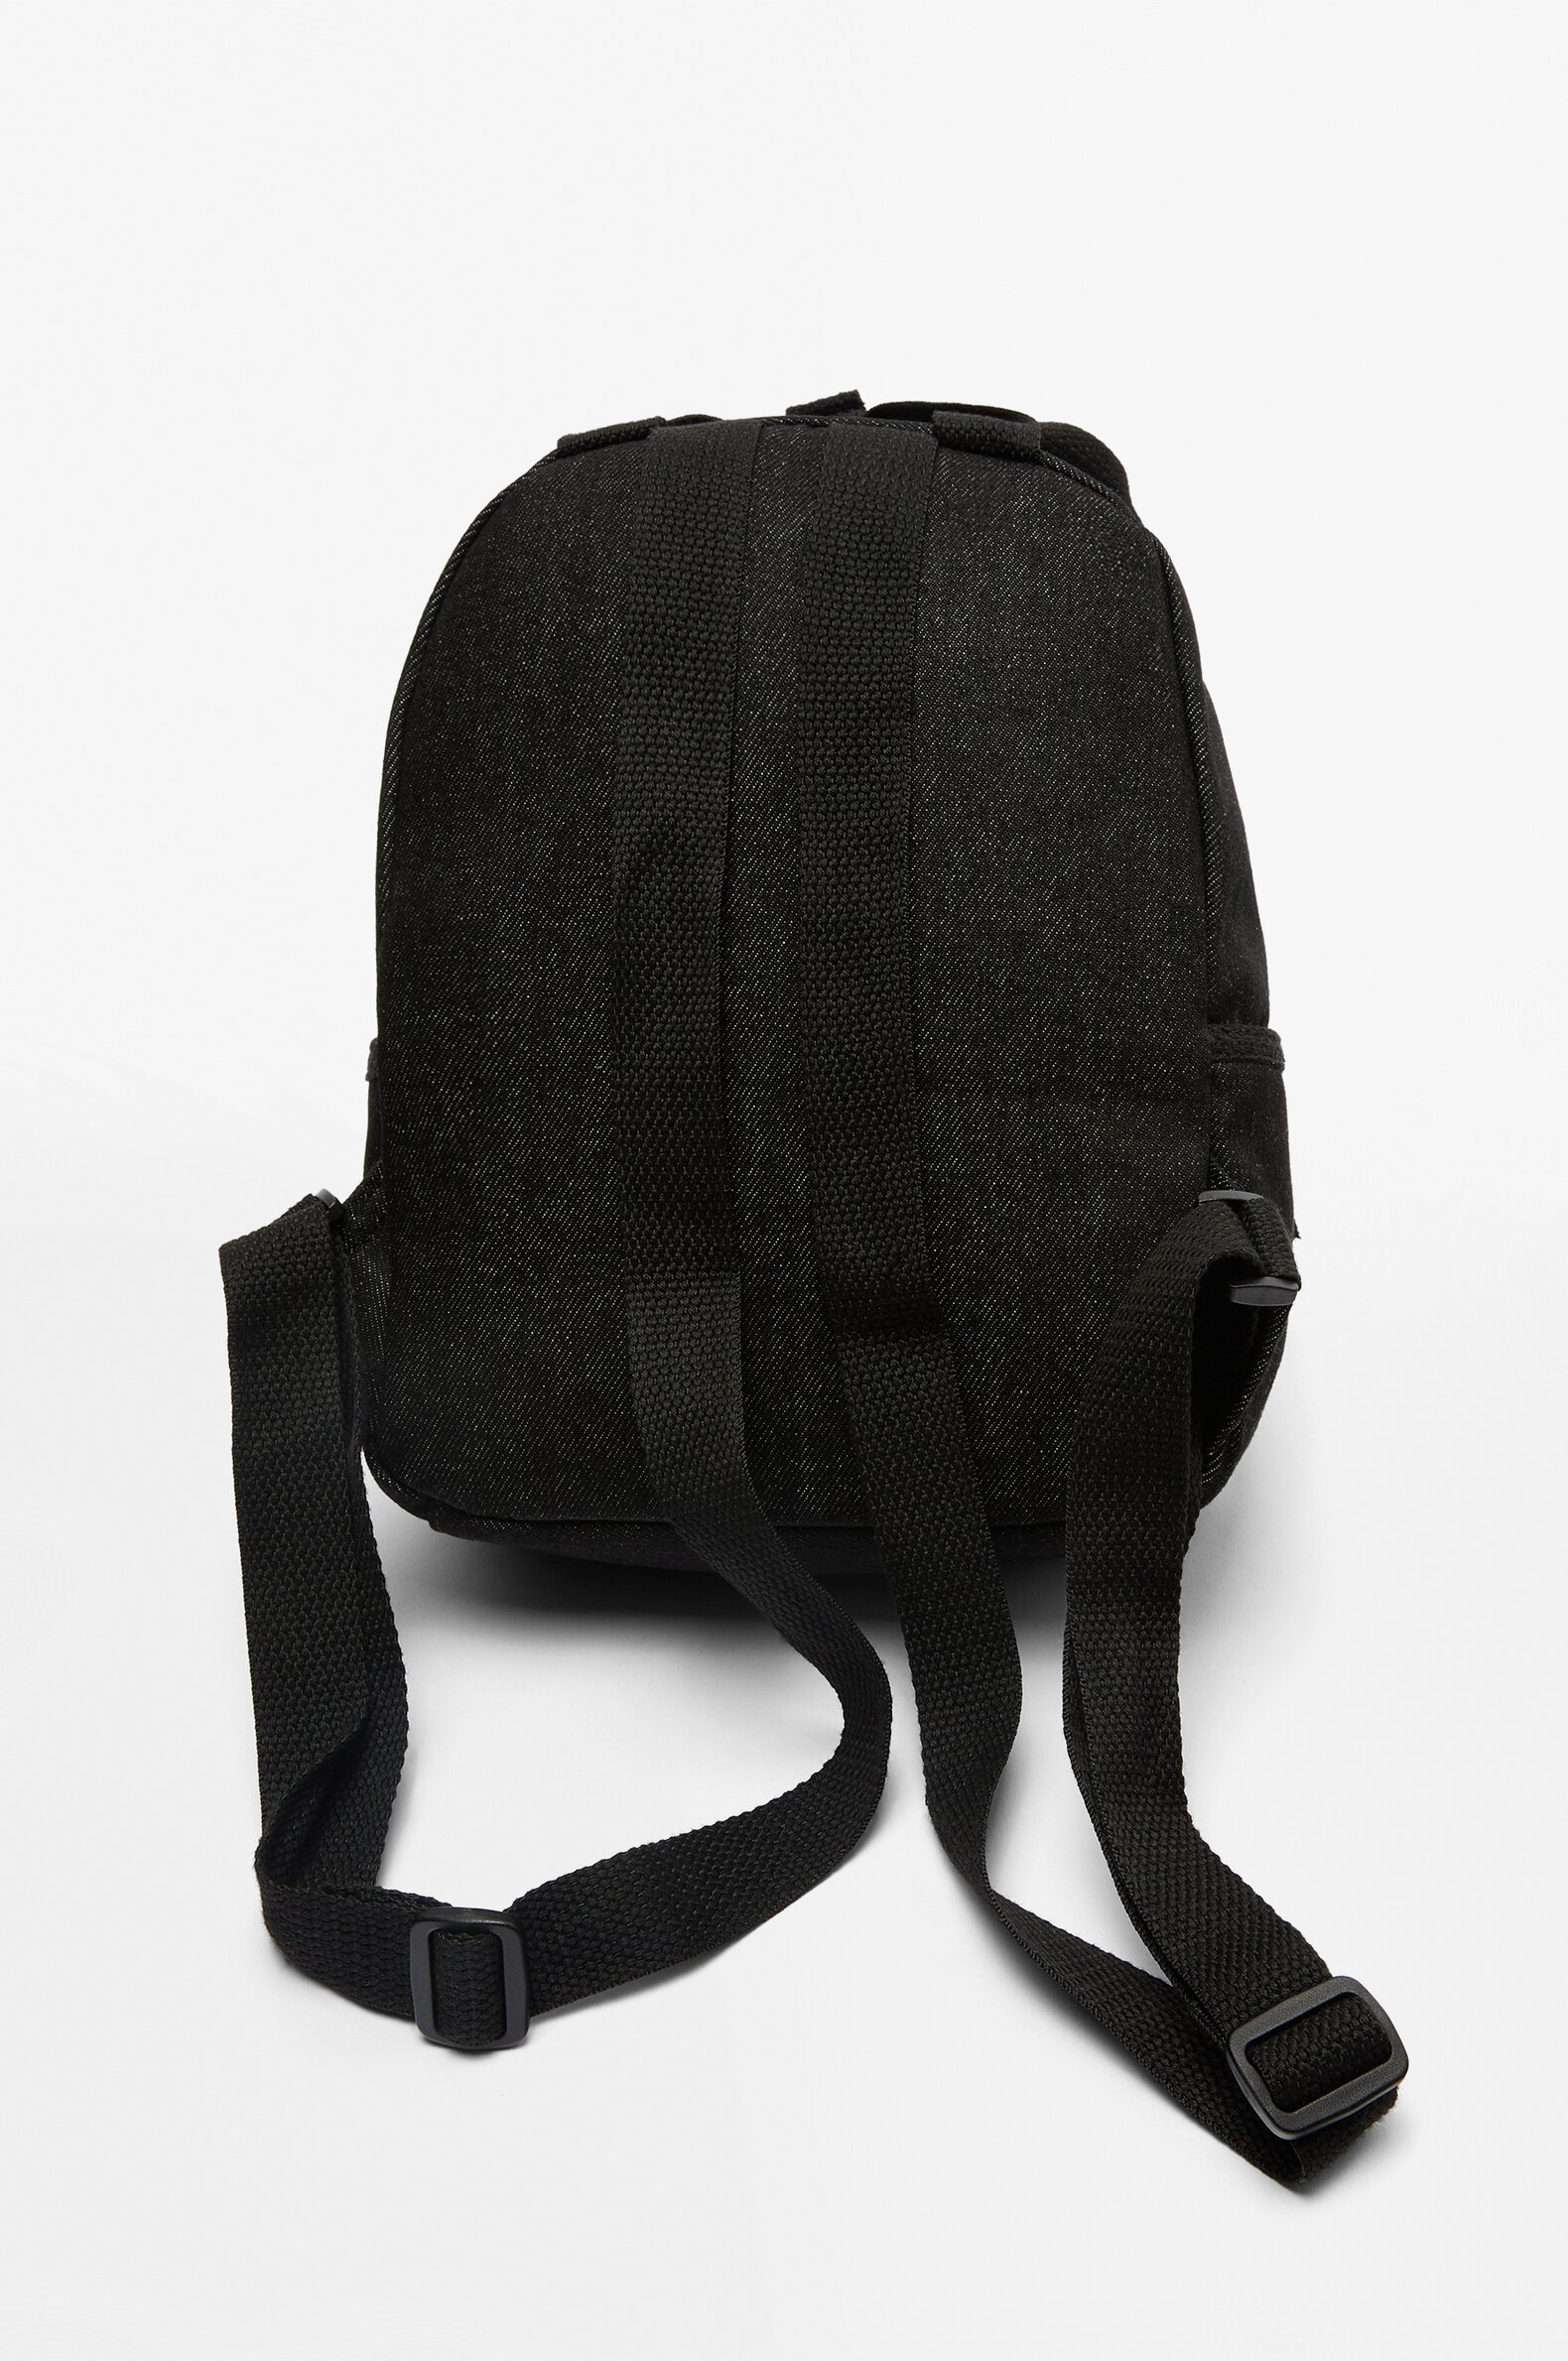 G-Star | Bags | G Star Nwt Black Denim Jeans Backpack | Poshmark